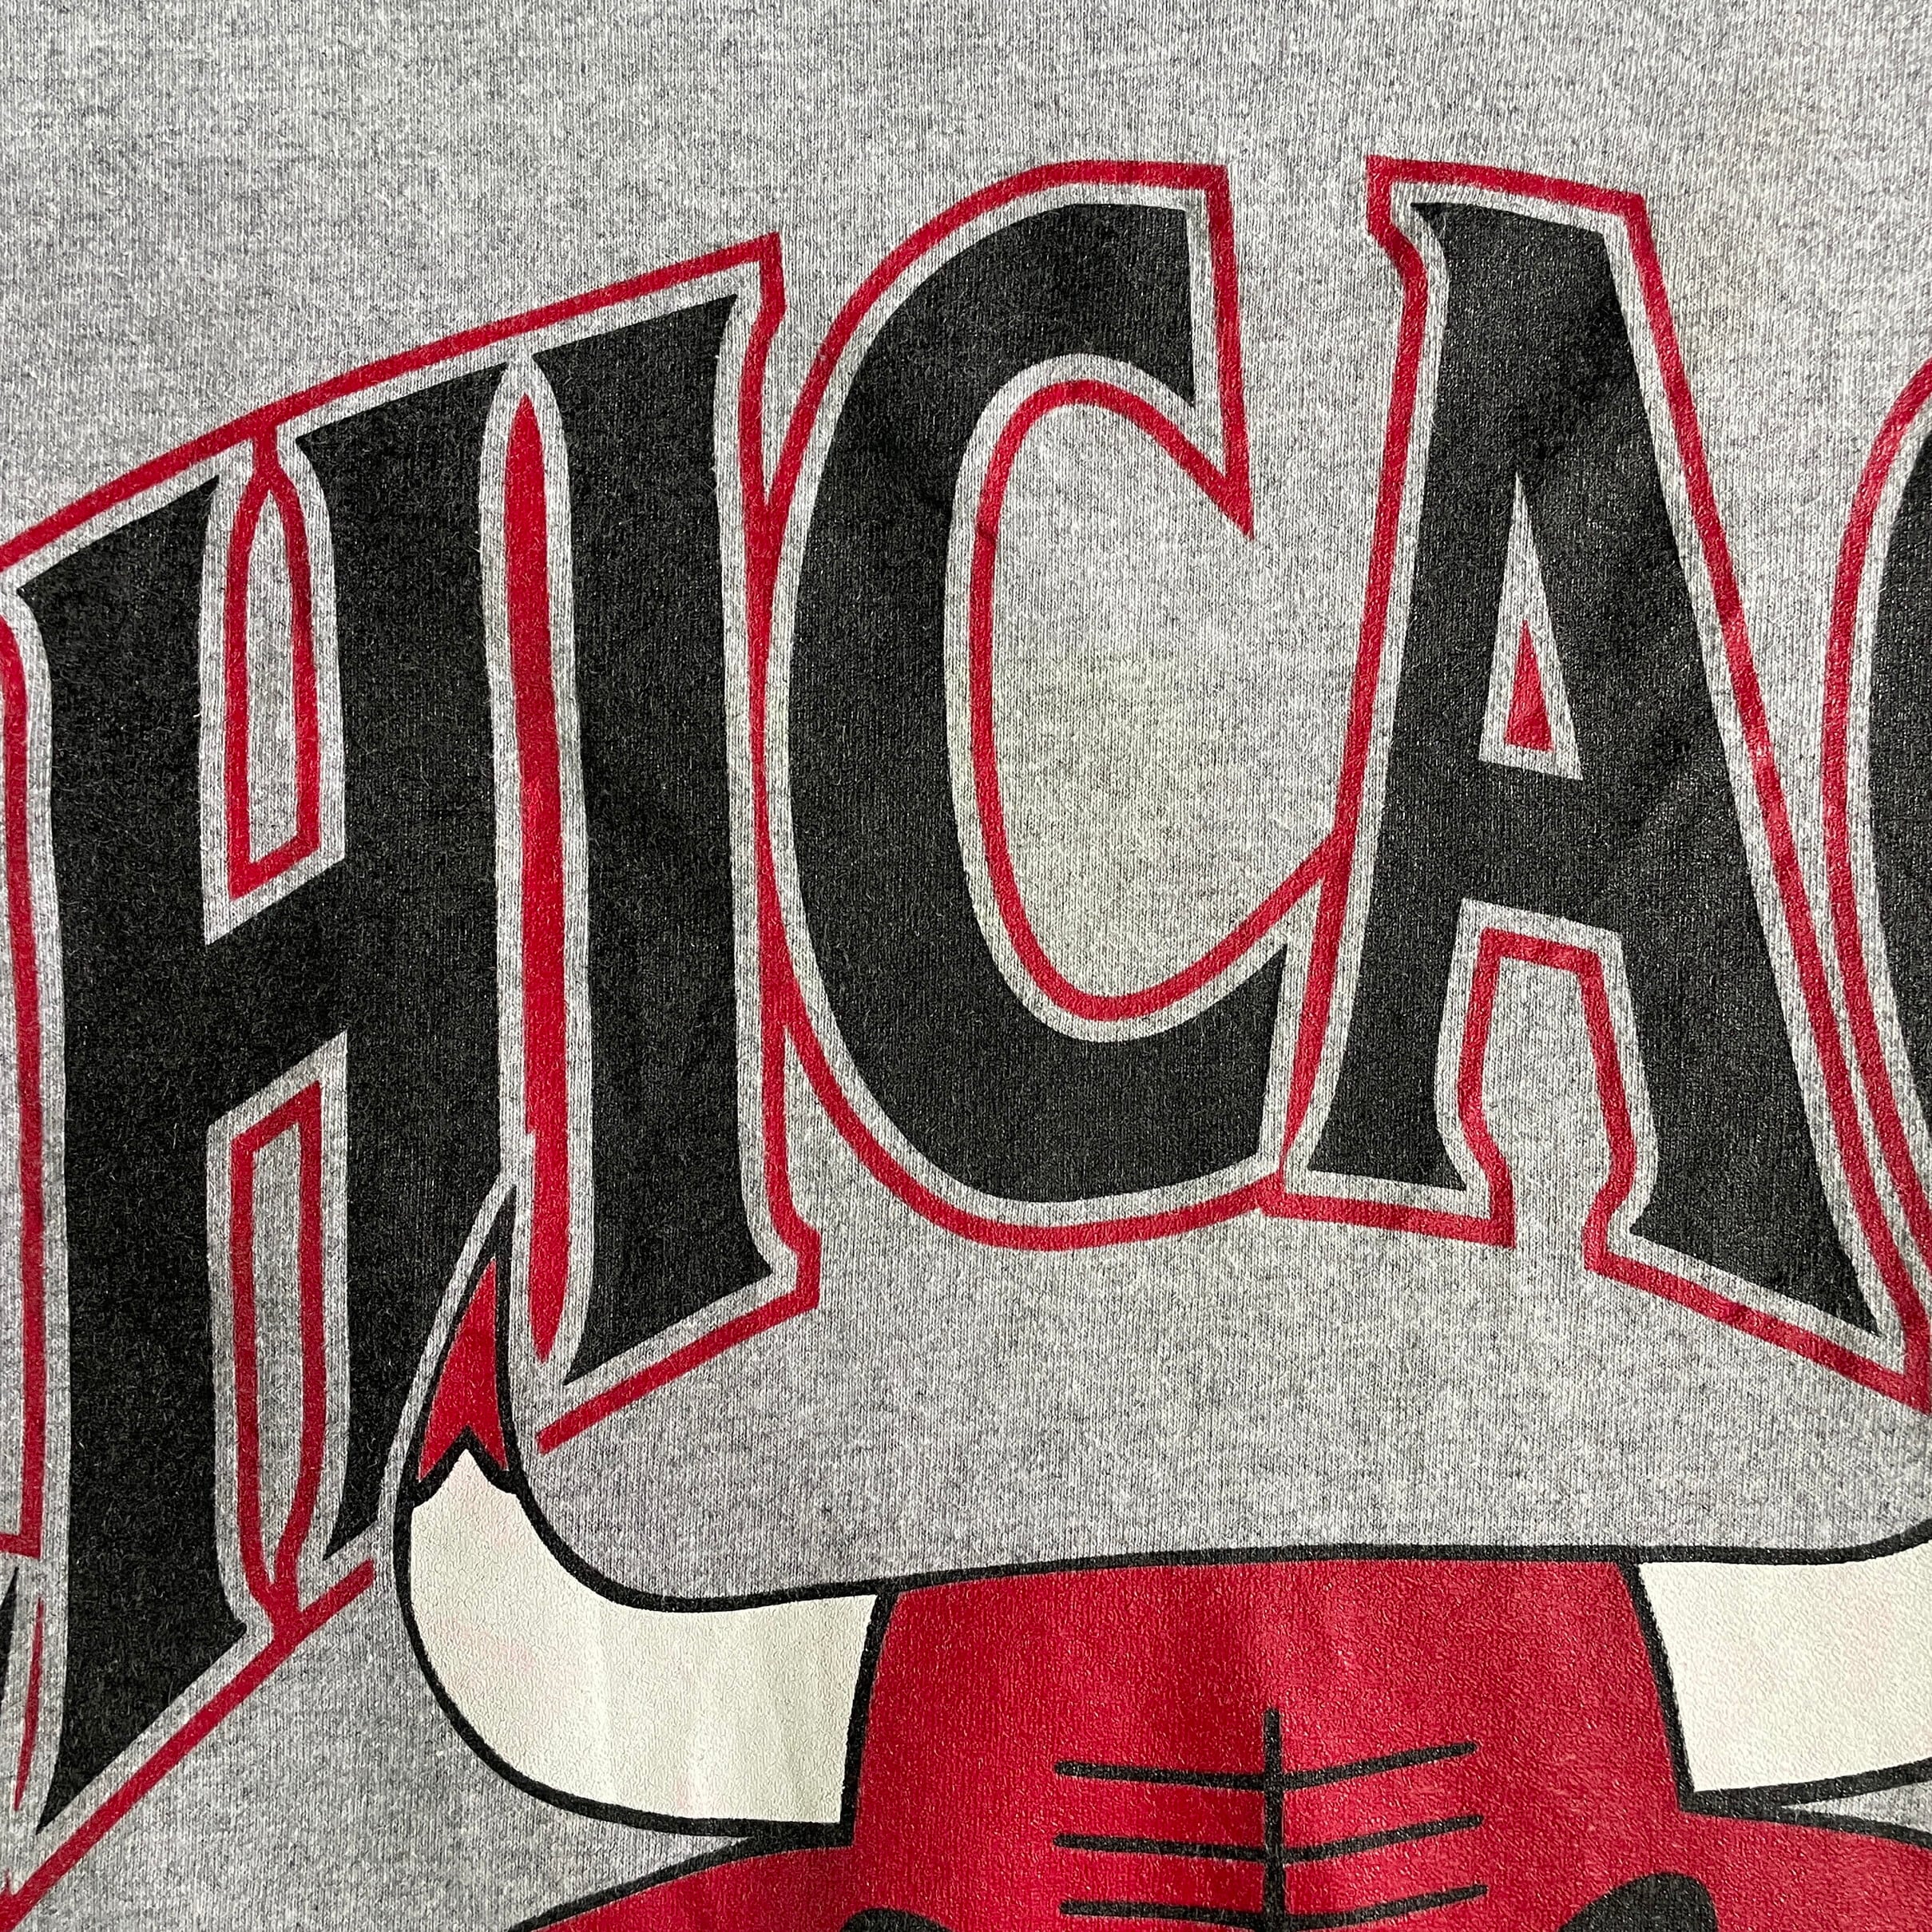 H2318 CHICAGO BULLS ブルズ　NBA プリントTシャツ